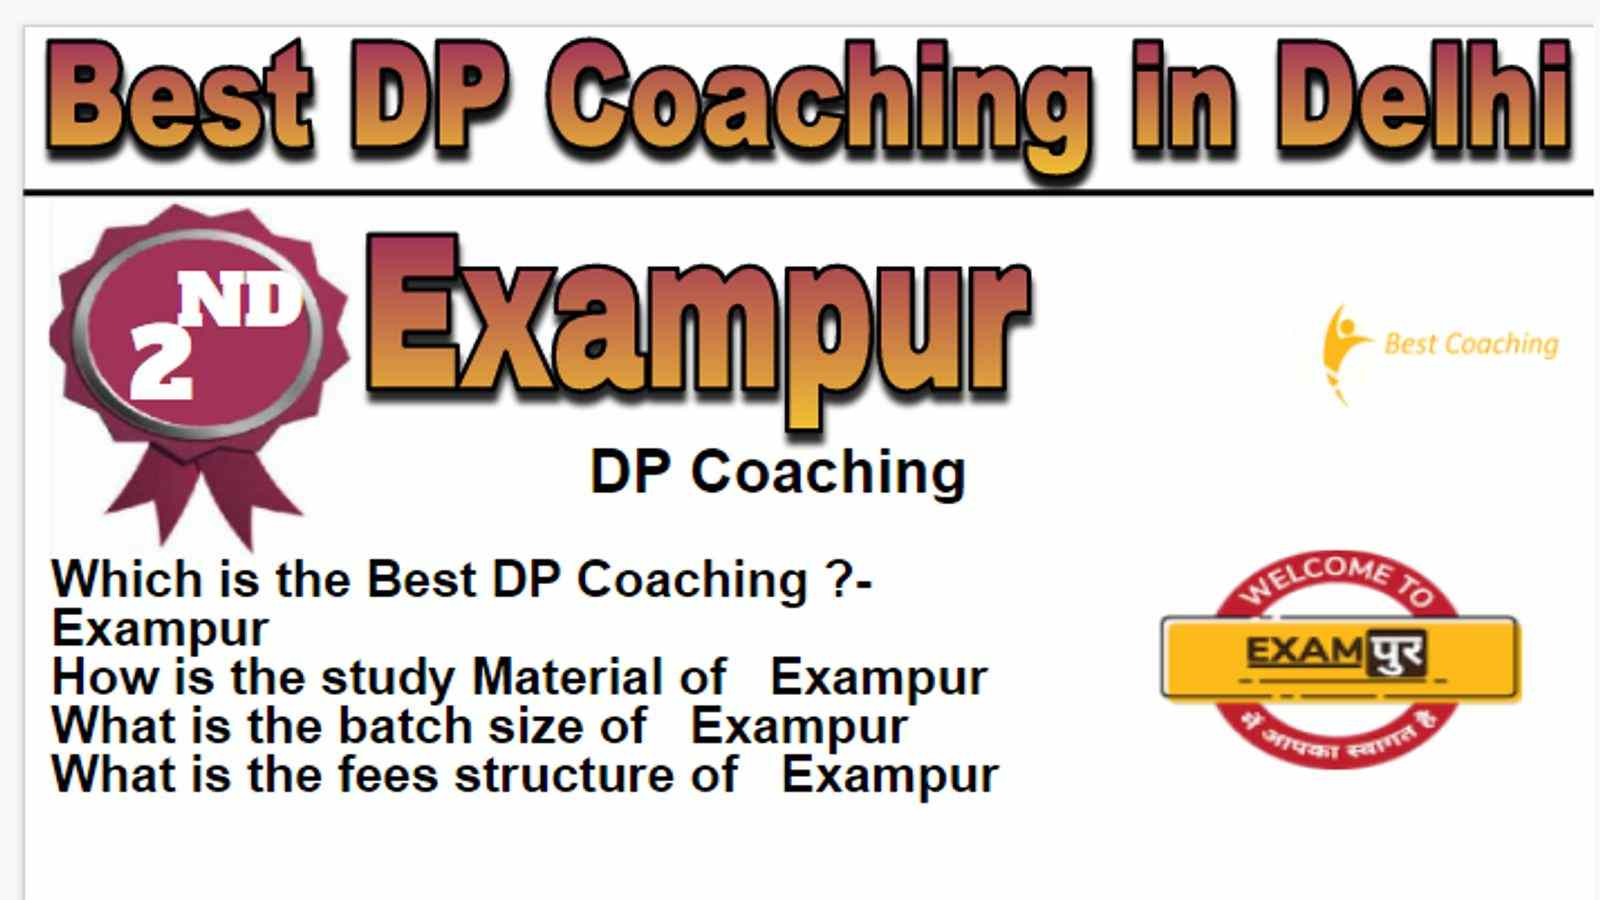 Rank 2 Best DP Coaching in Delhi